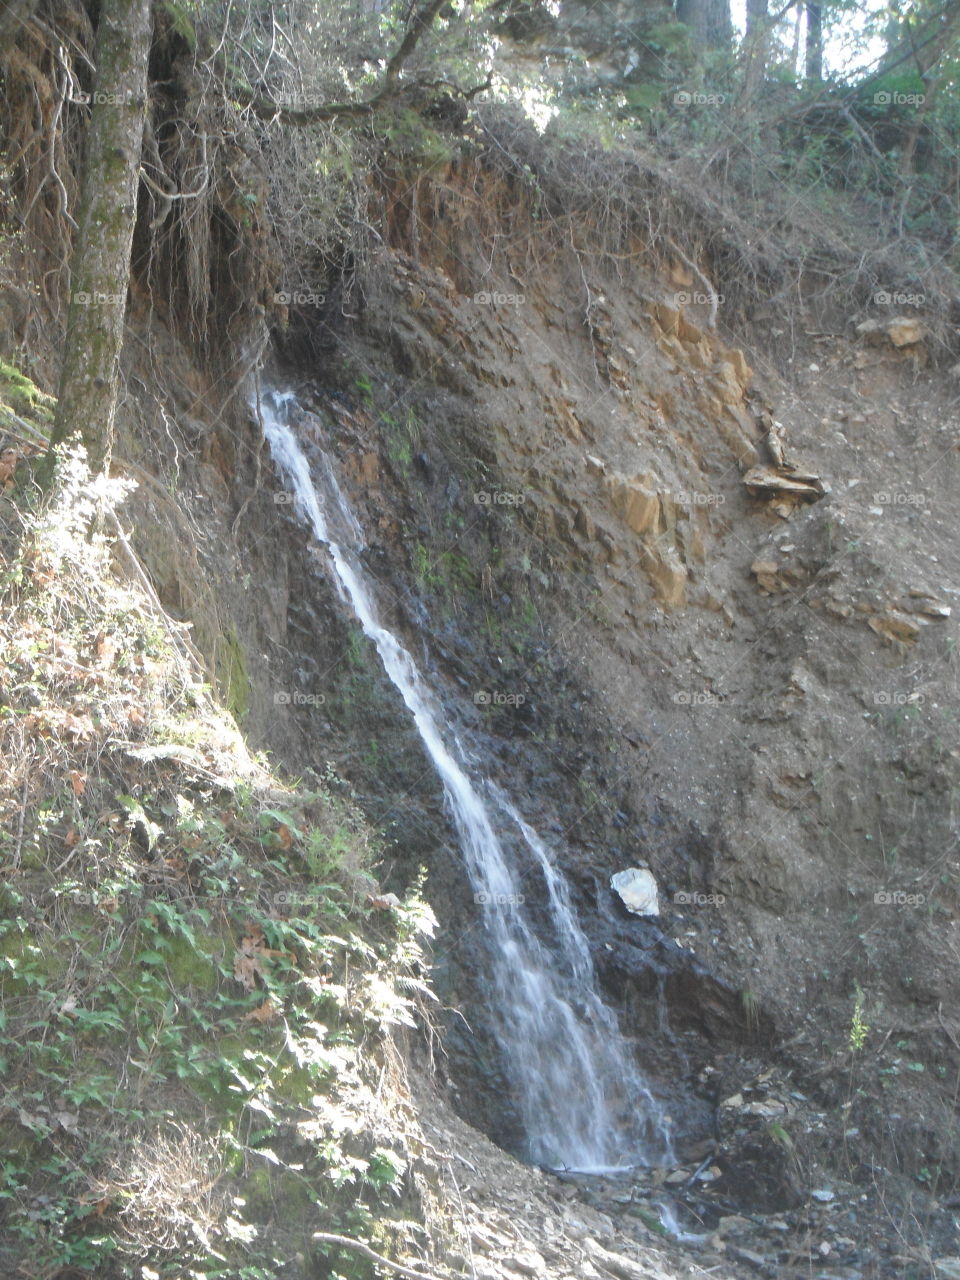 Roadside Waterfall